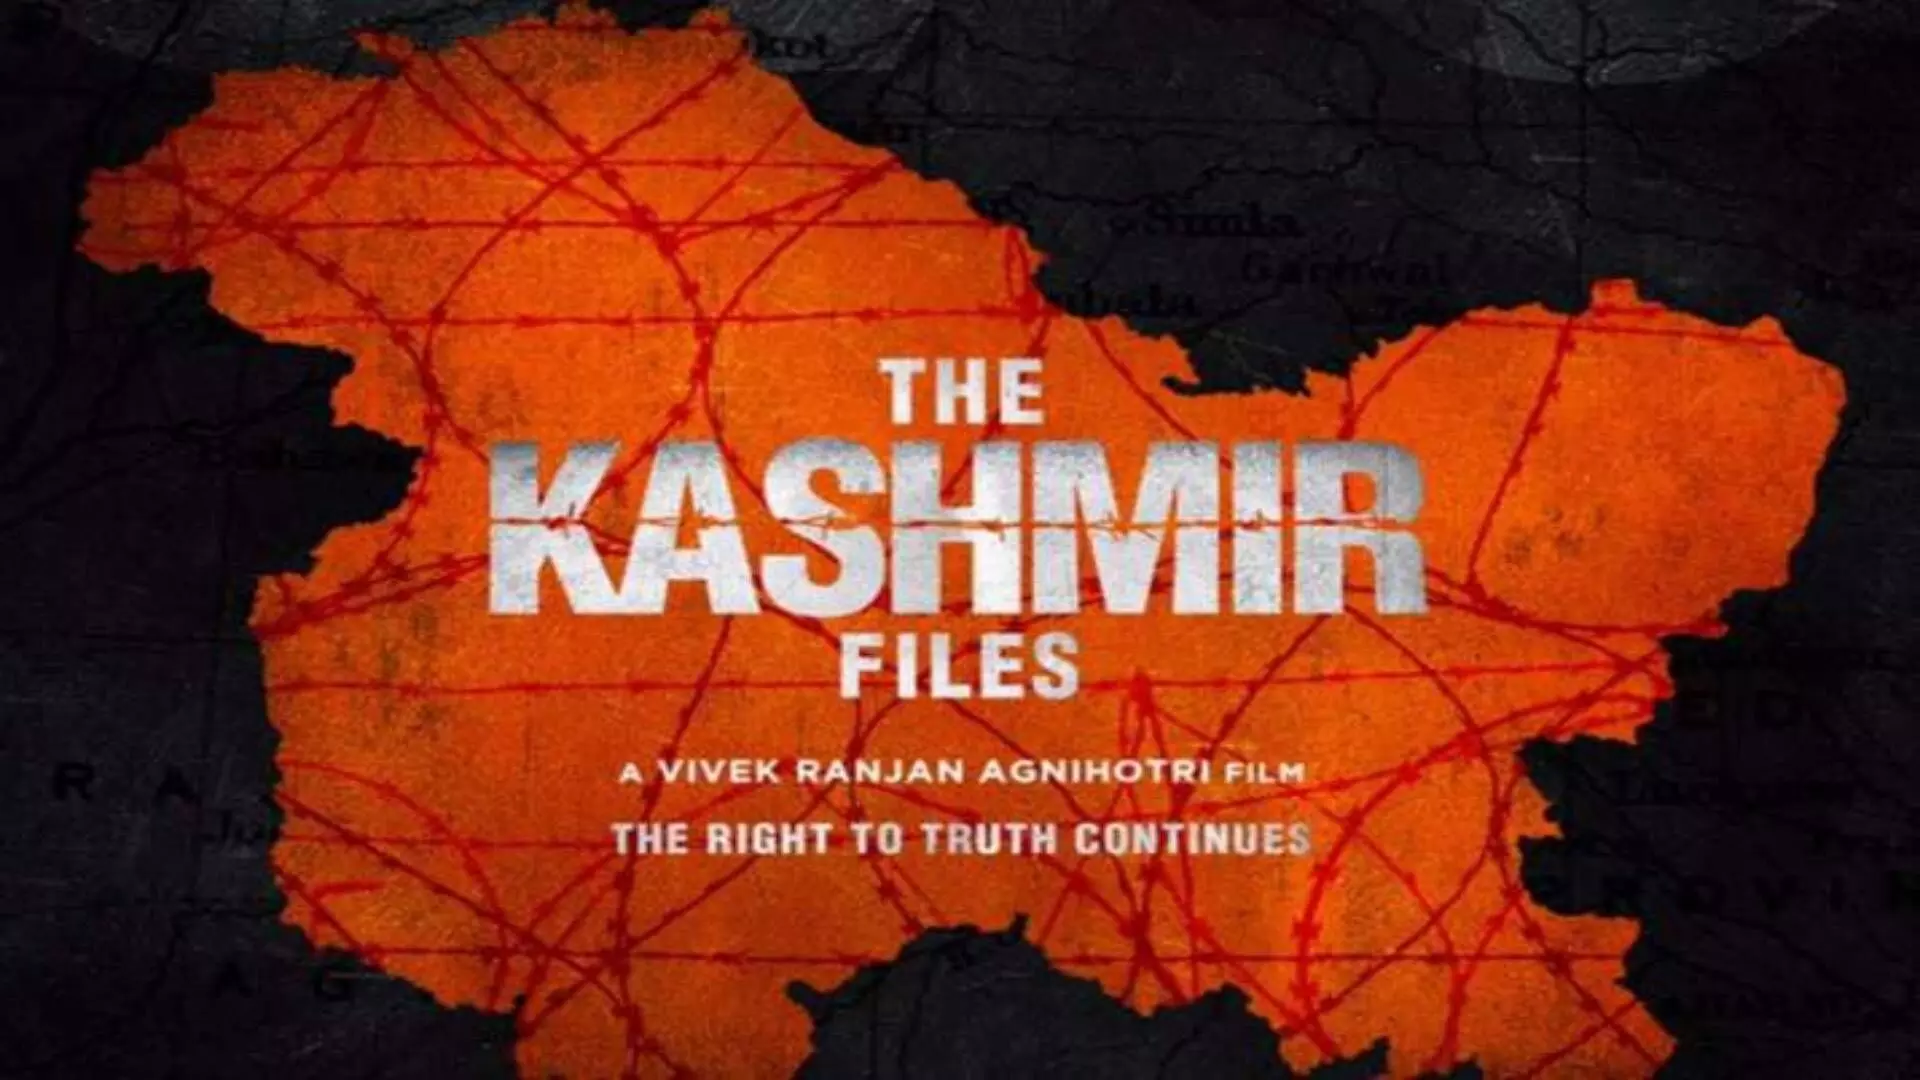 काश्मीर फाईल्स आणि हिंदू राष्ट्रवादाची सूज